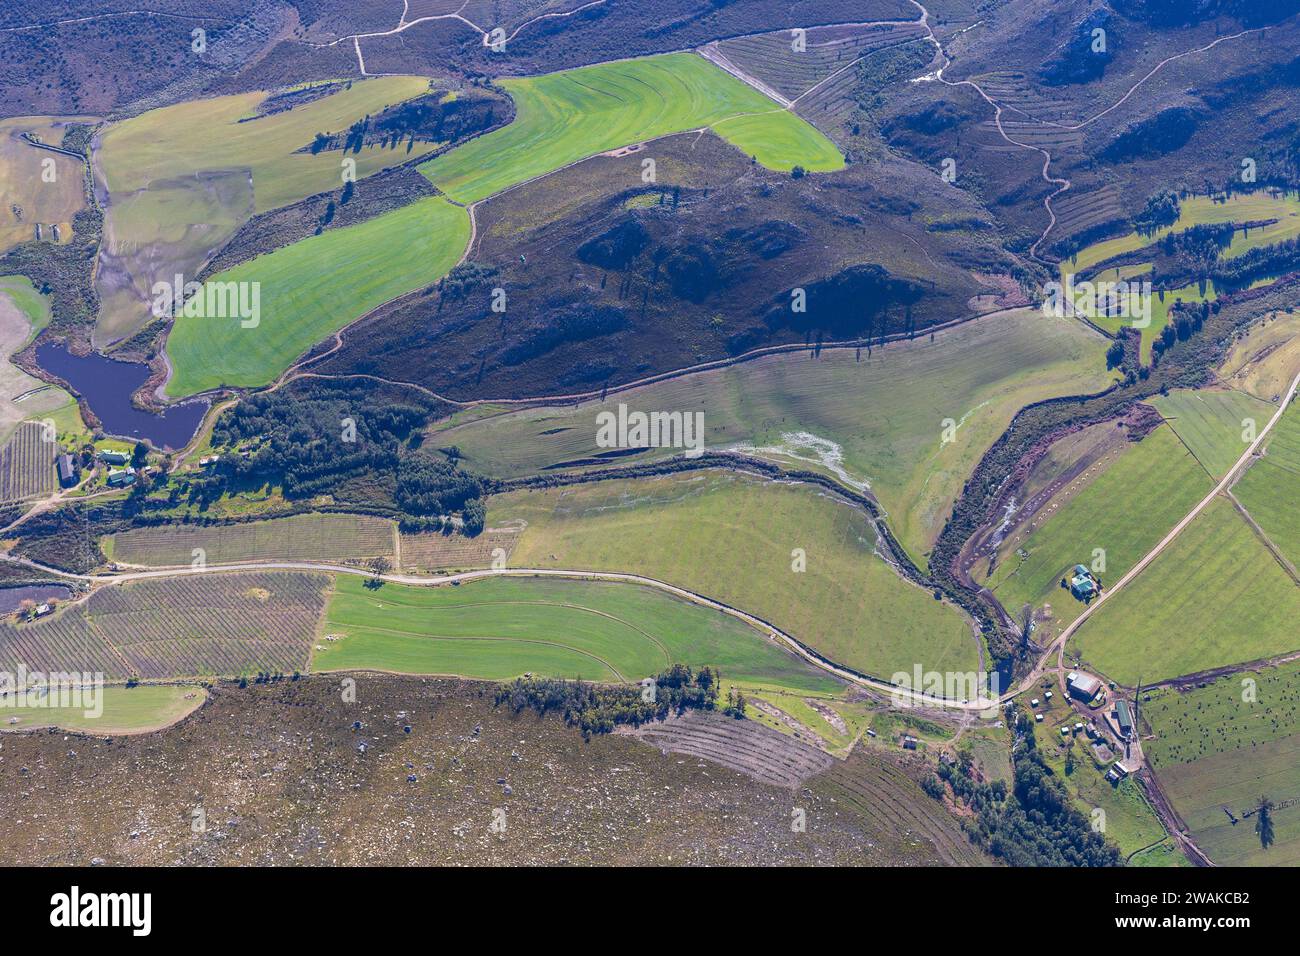 Paysage photo aérienne de la campagne pittoresque de la province du Cap occidental en Afrique du Sud, prise depuis un hélicoptère en route vers George. Banque D'Images